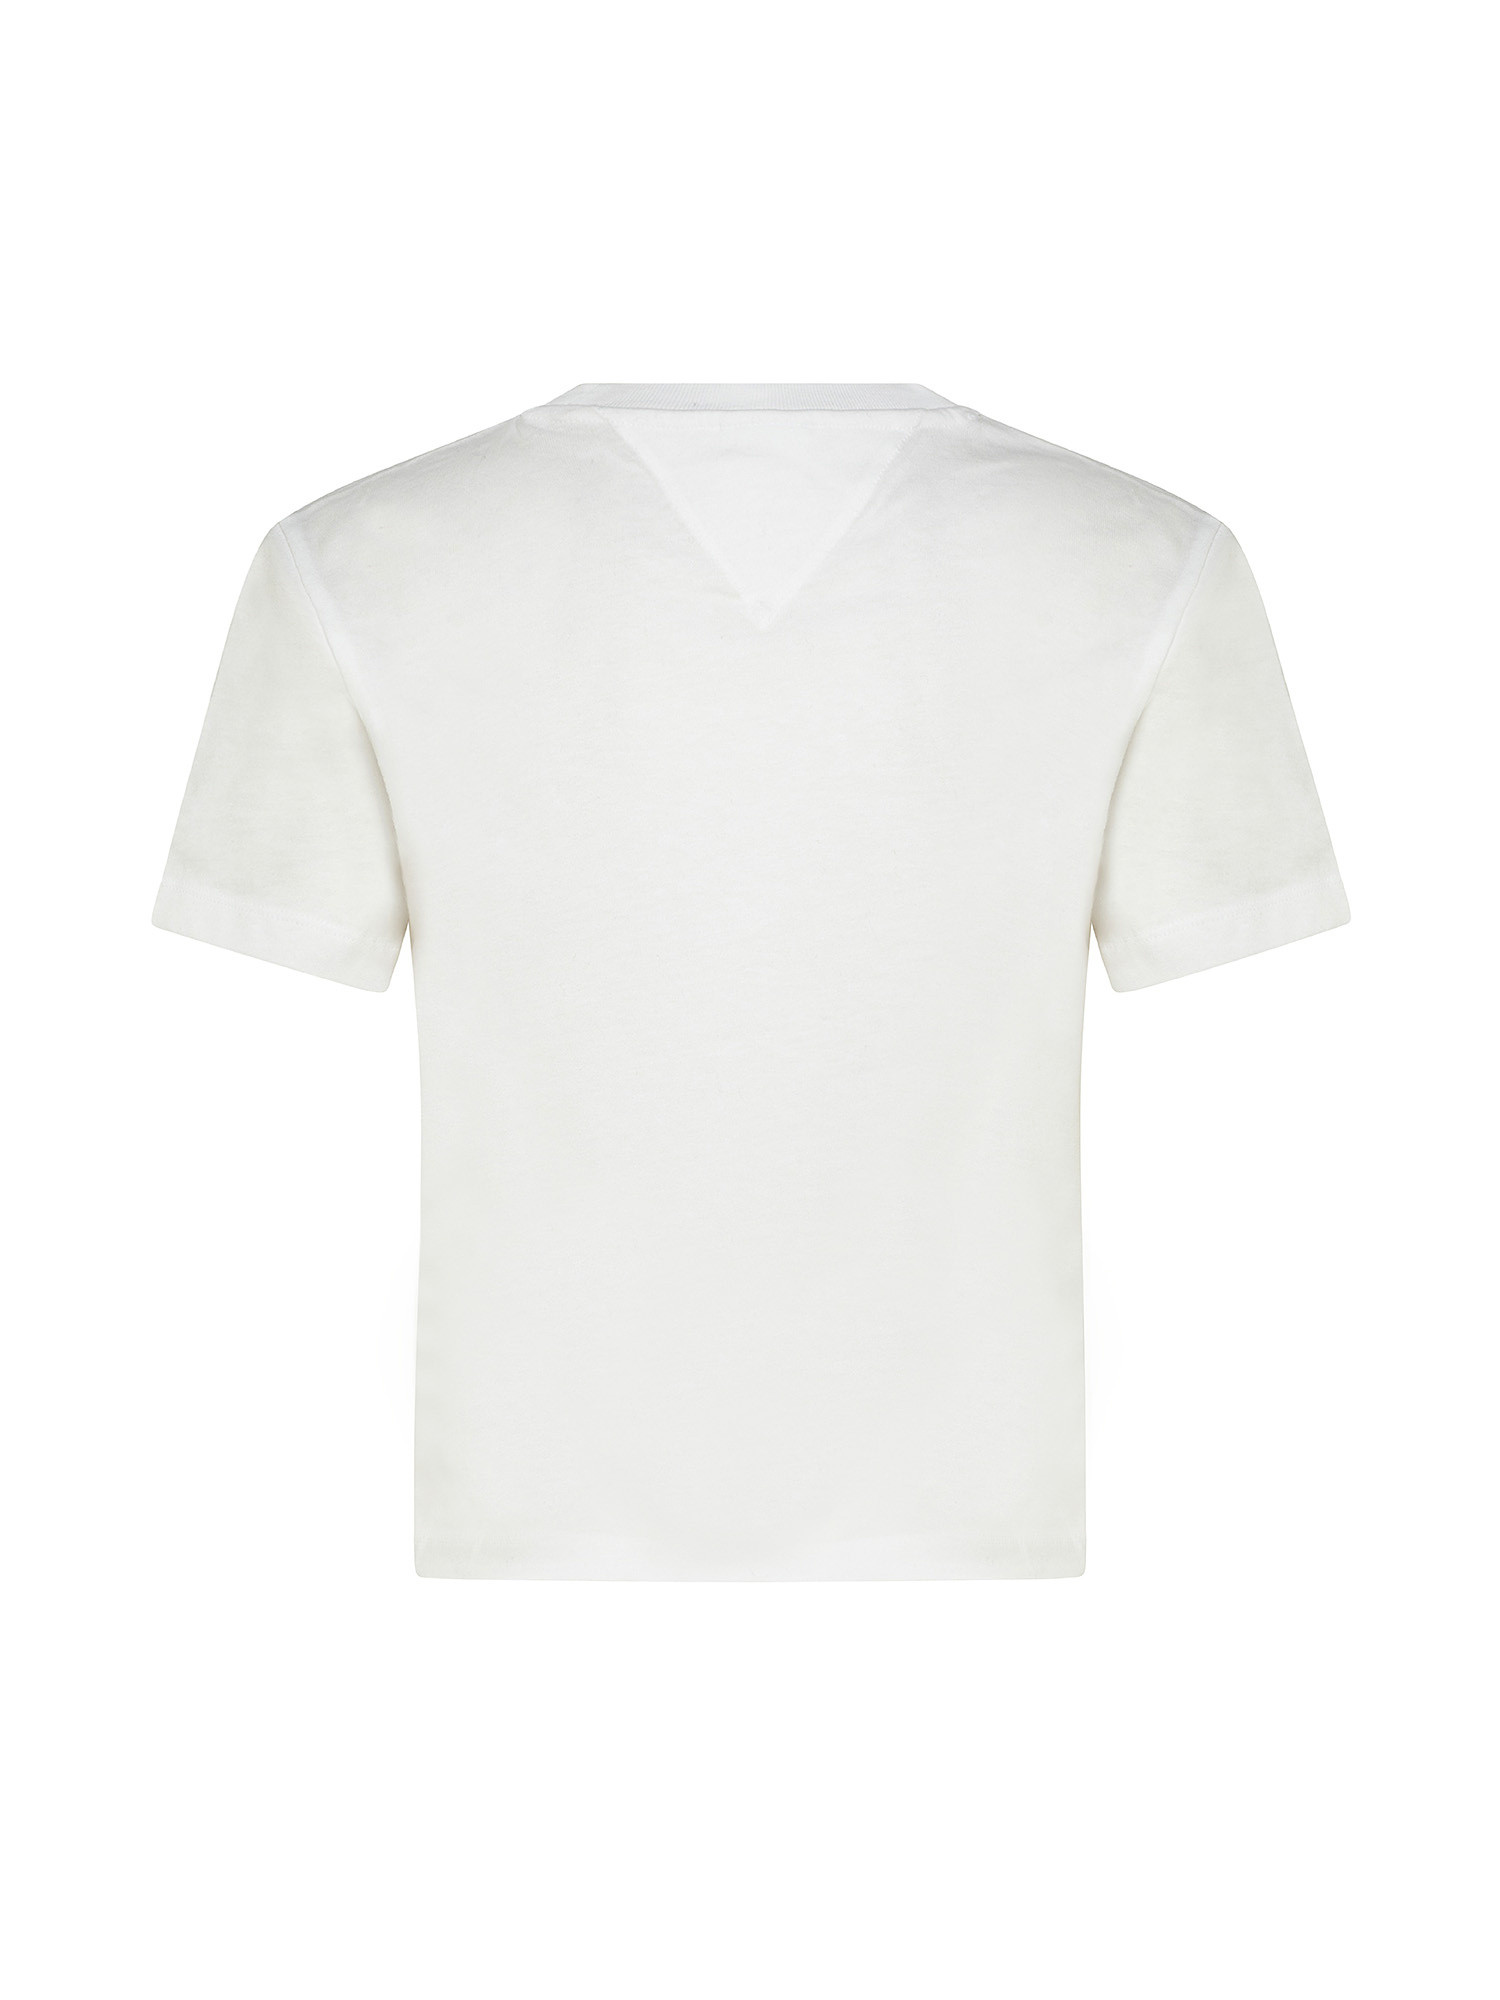 T-shirt con logo ricamato, Bianco, large image number 1